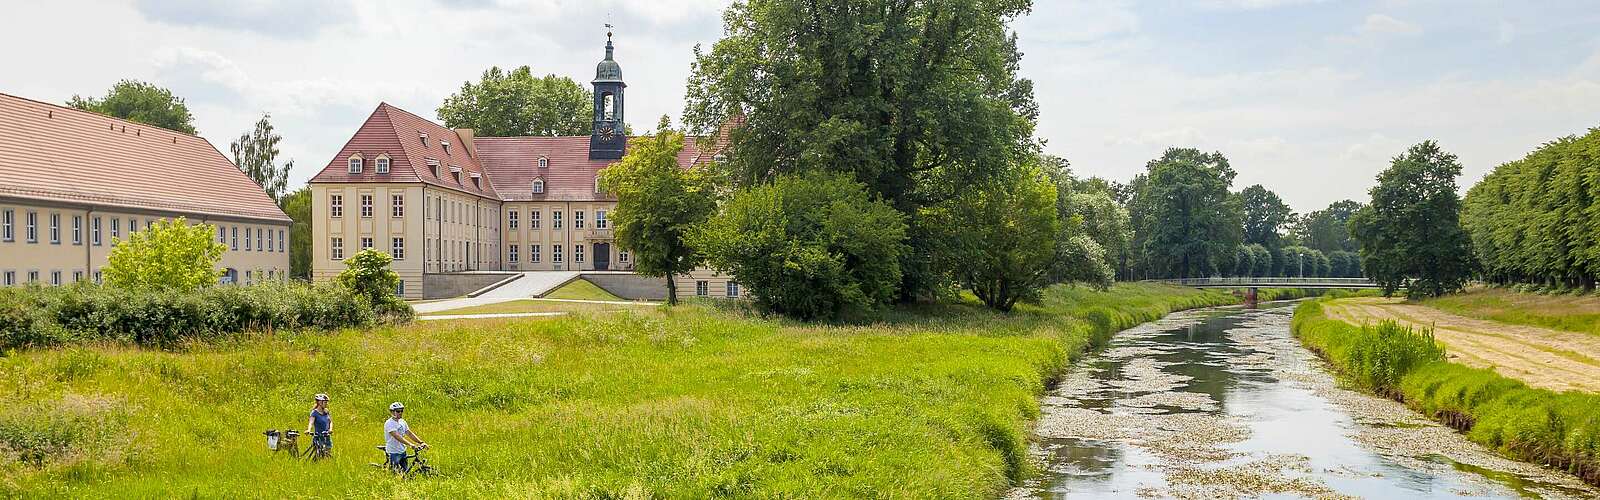 Schloss Elsterwerda mit Grünanlage,
        
    

        
        
            Foto: Andreas Franke